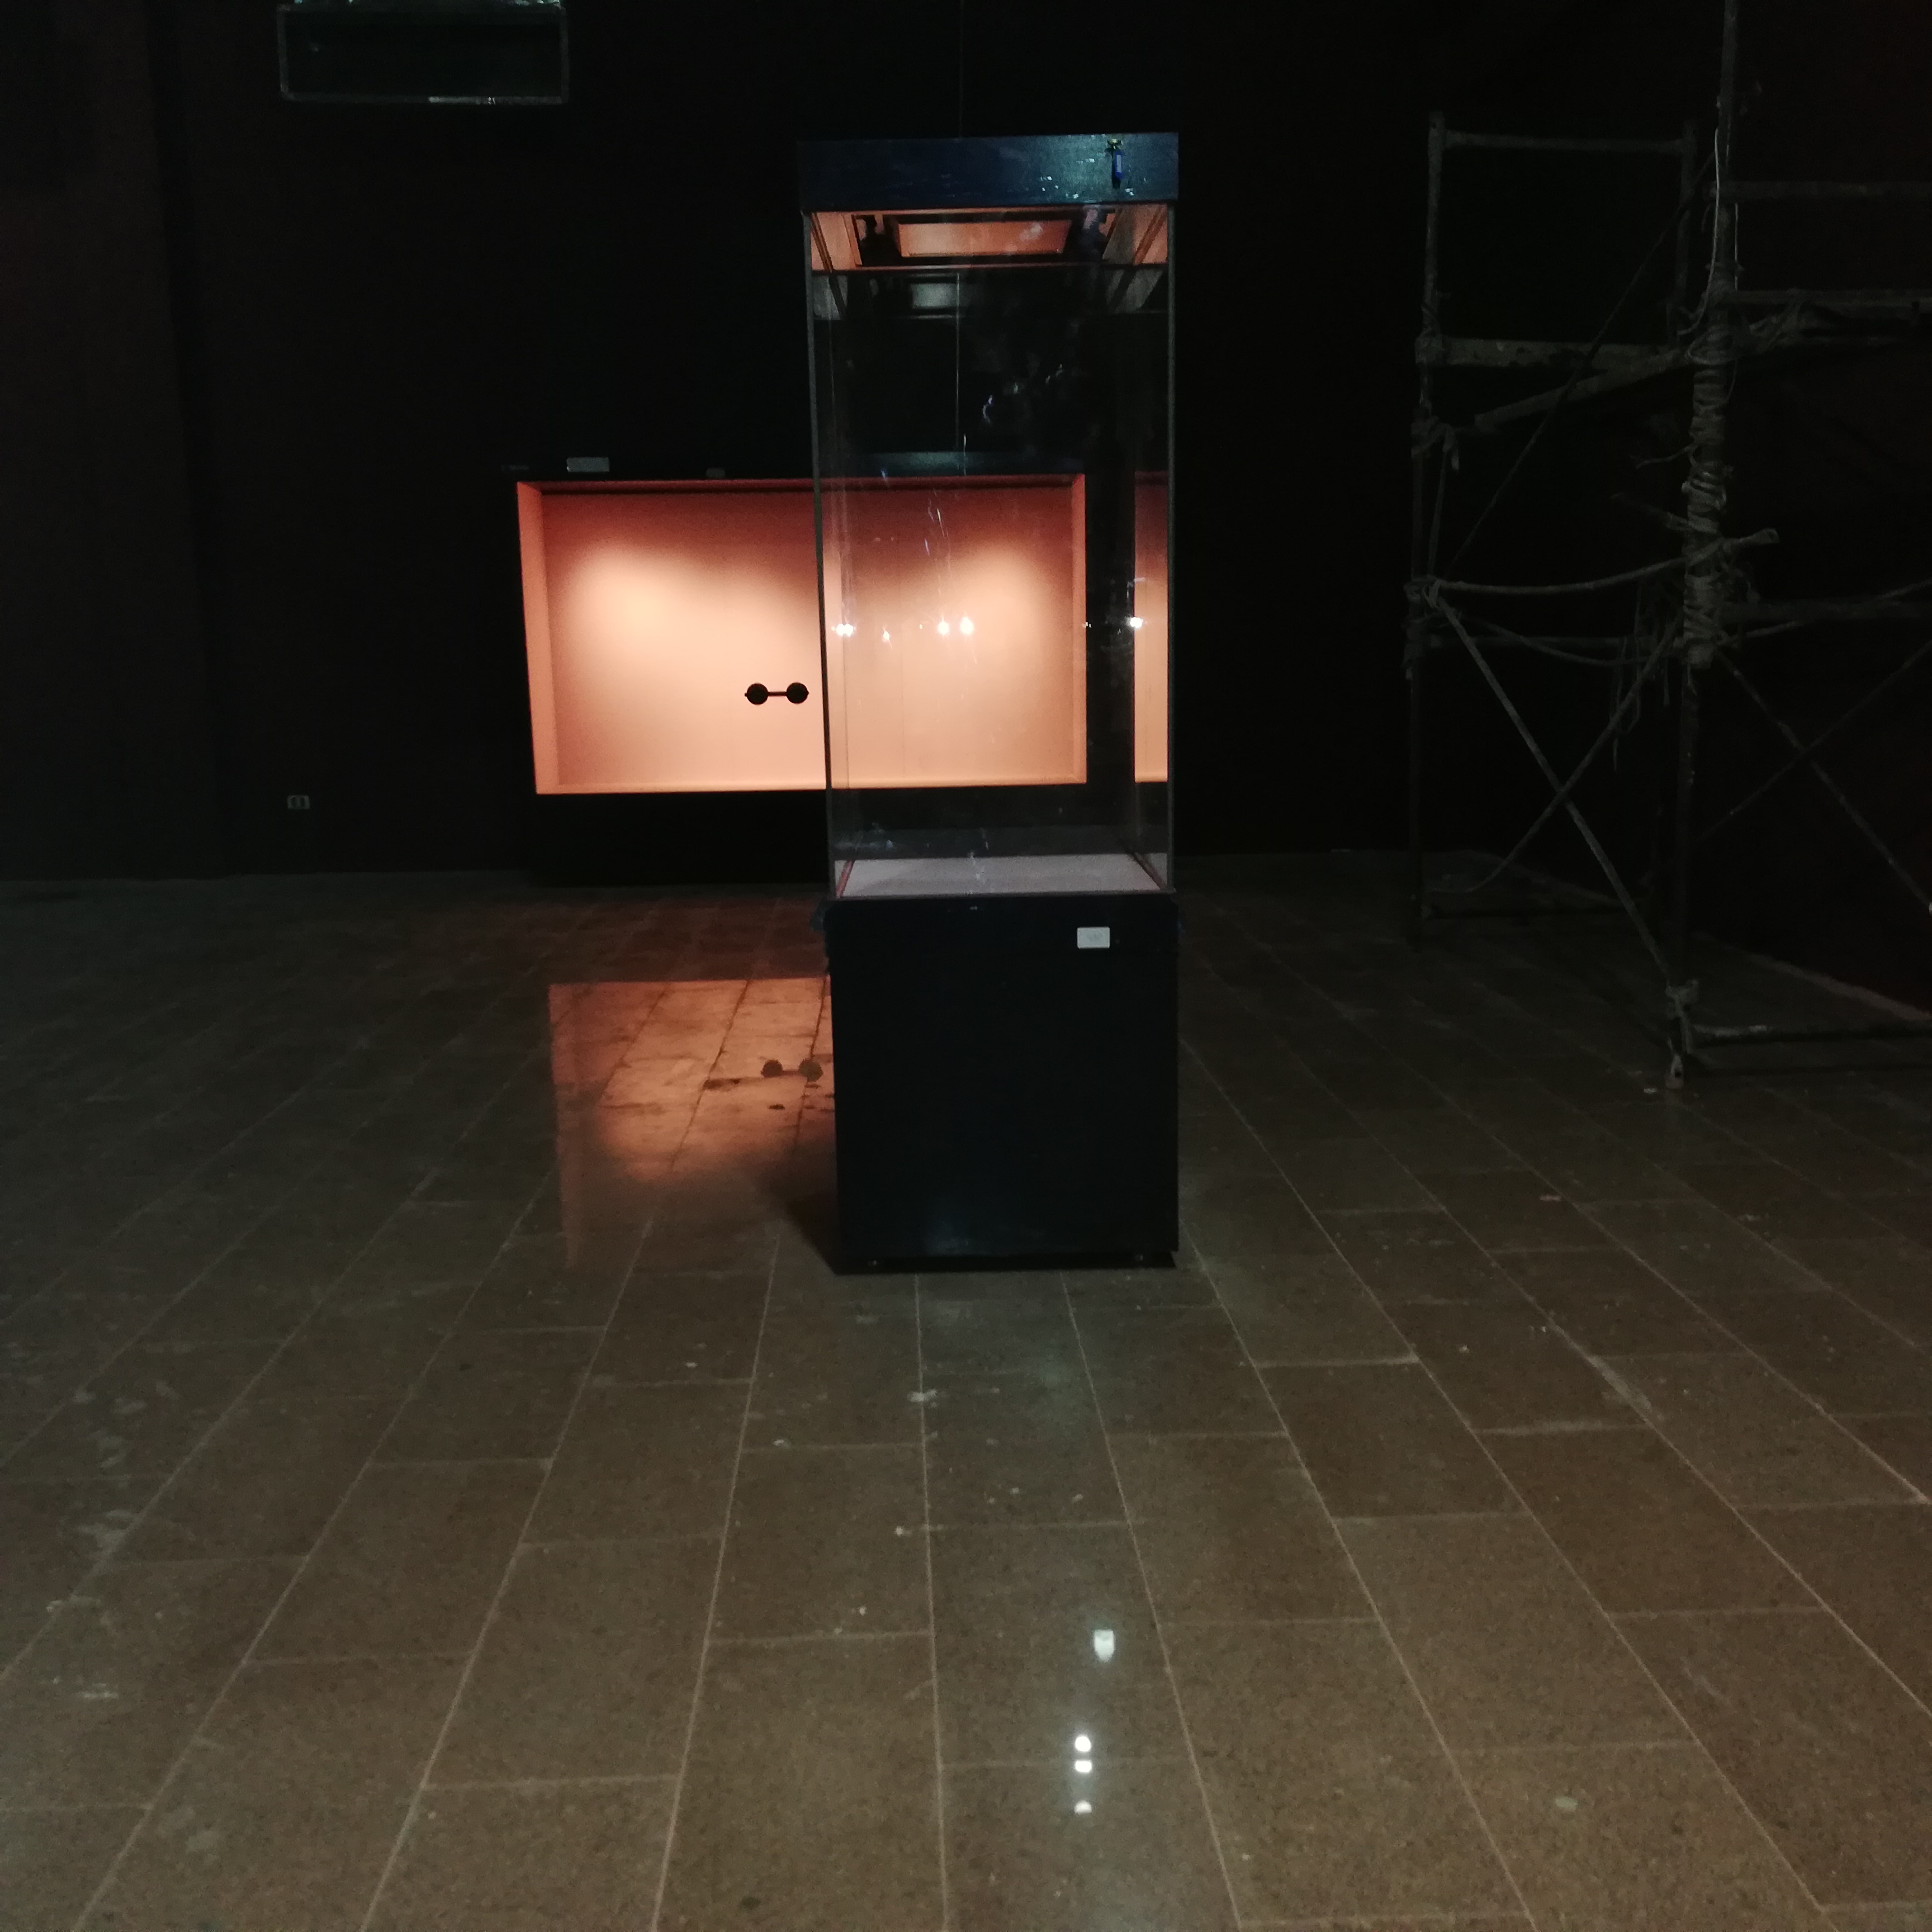 فاترين عرض القطع الاثارية بمتحف الغردقة قبل افتتاحه  (7)